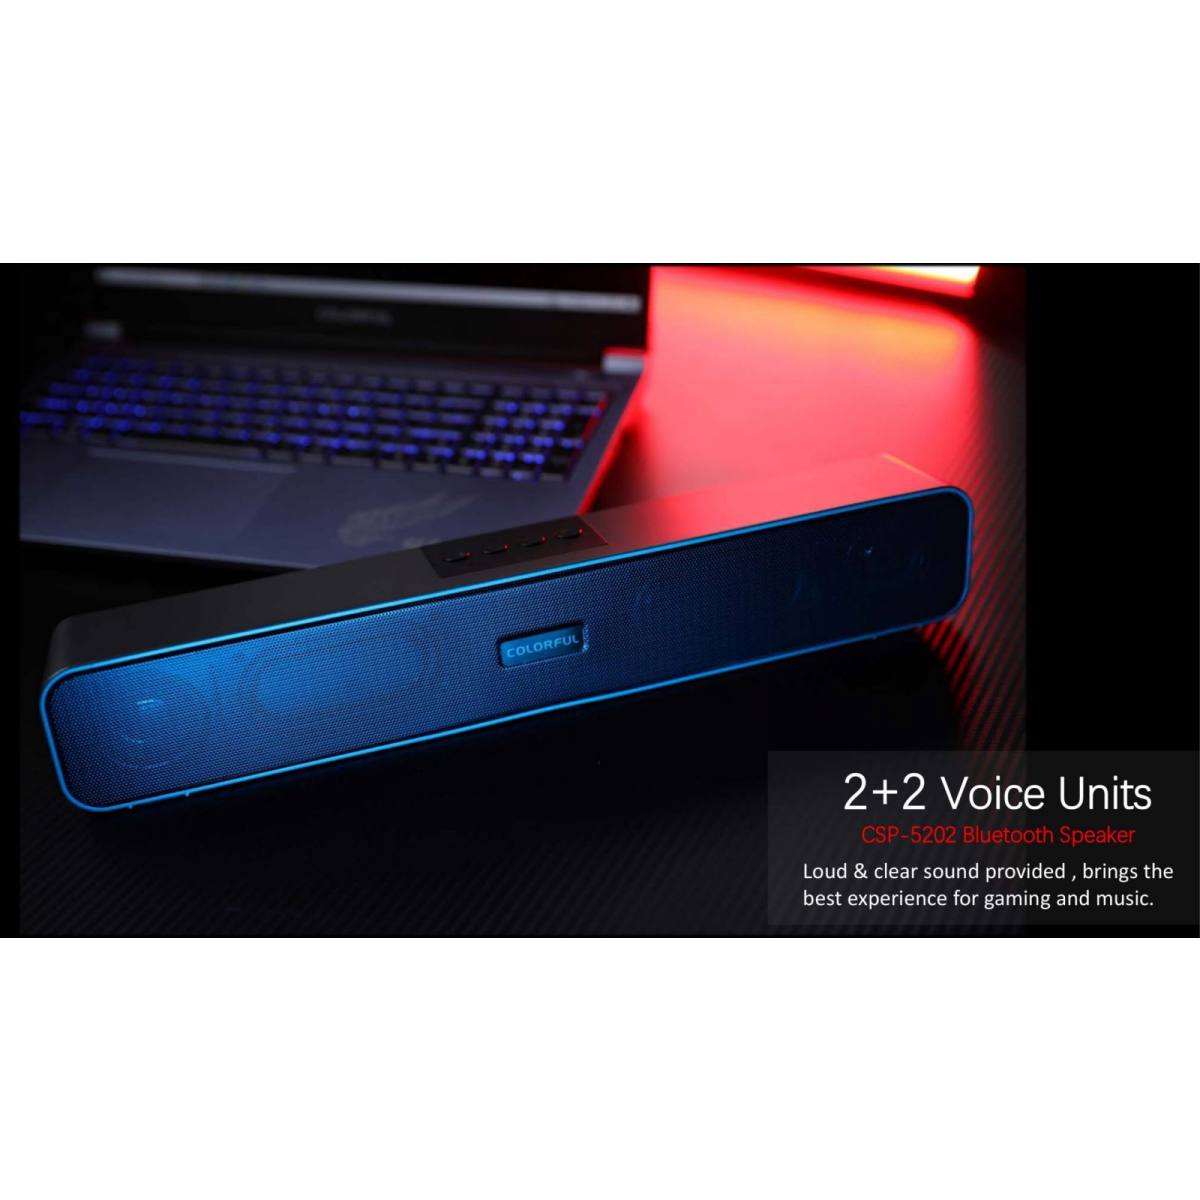 Loa Colorful không dây Soundbar CSP-5202 Bluetooth